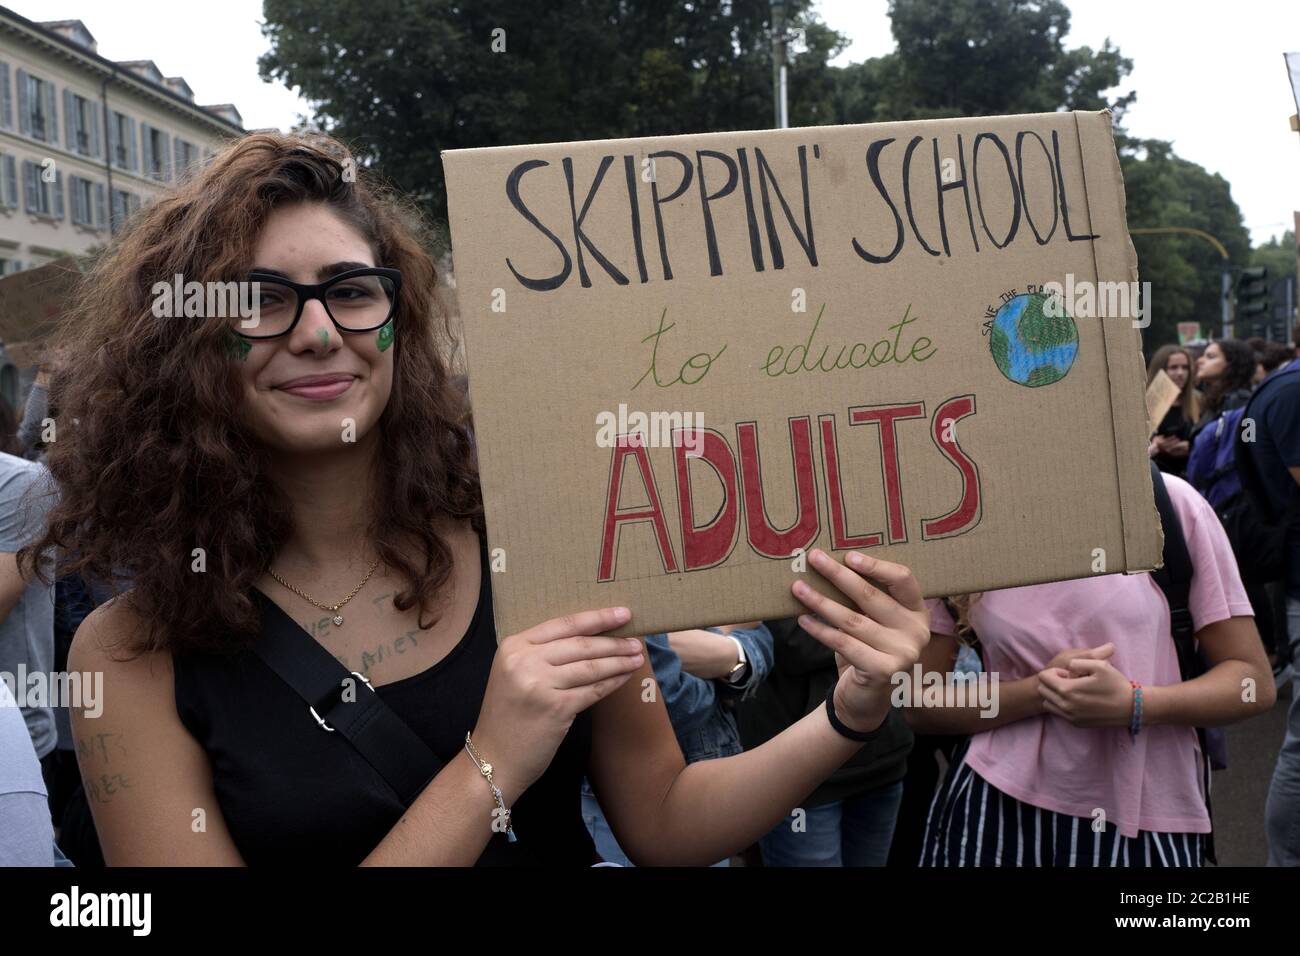 Studentenstreik Freitag für die Zukunft, internationaler Streik gegen die globale Erwärmung, in Mailand, September 2019. Stockfoto